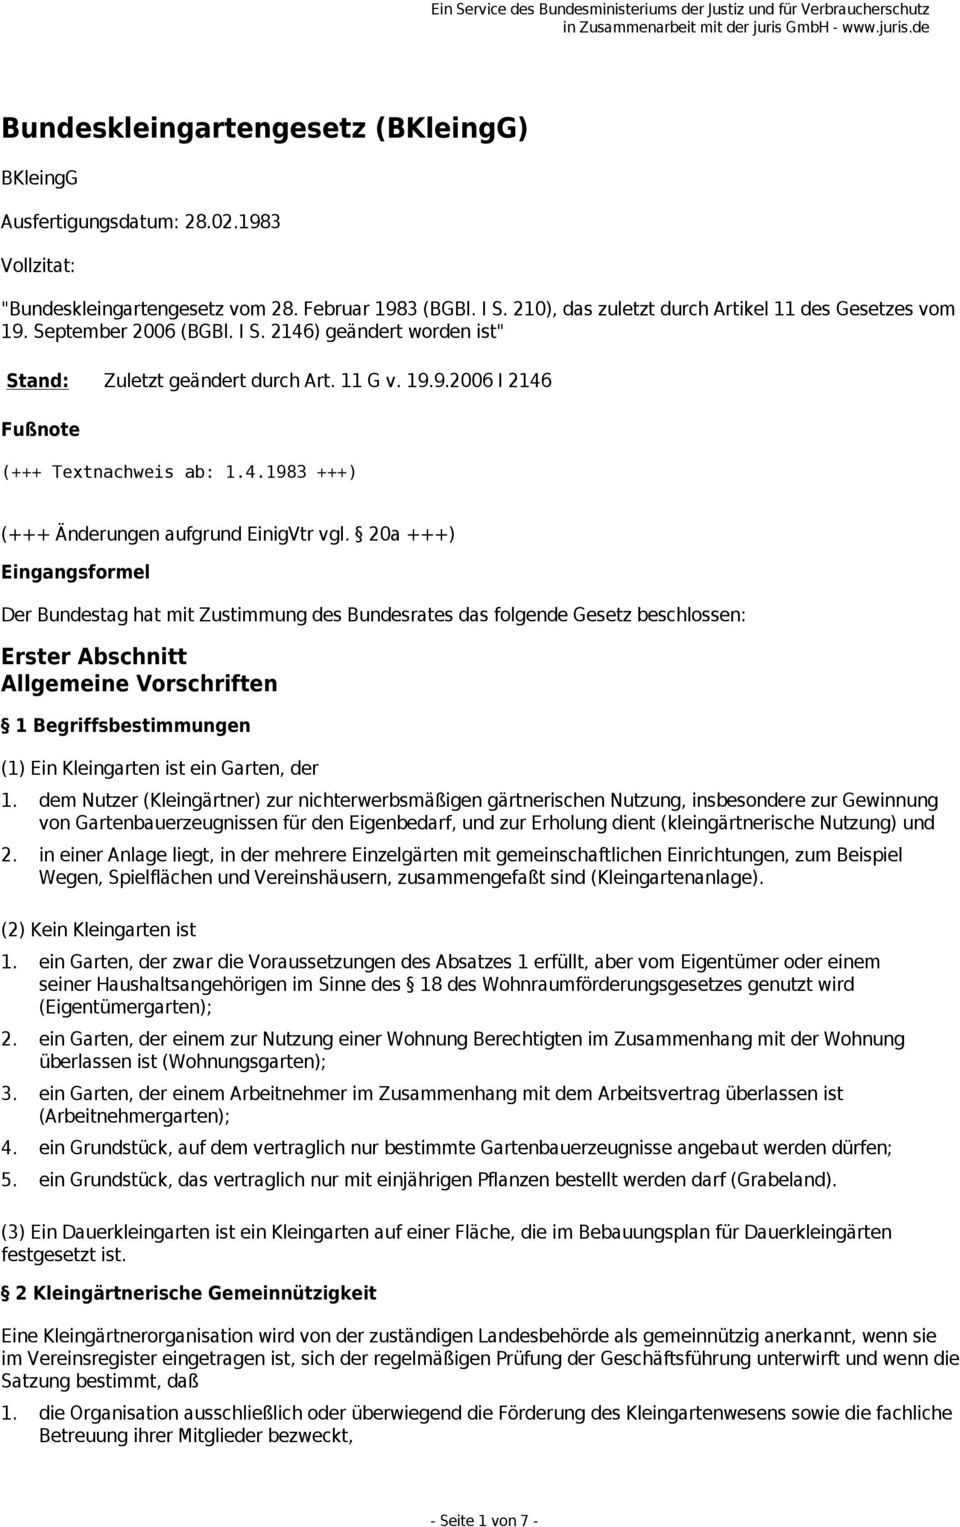 20a +++) Eingangsformel Der Bundestag hat mit Zustimmung des Bundesrates das folgende Gesetz beschlossen: Erster Abschnitt Allgemeine Vorschriften 1 Begriffsbestimmungen (1) Ein Kleingarten ist ein